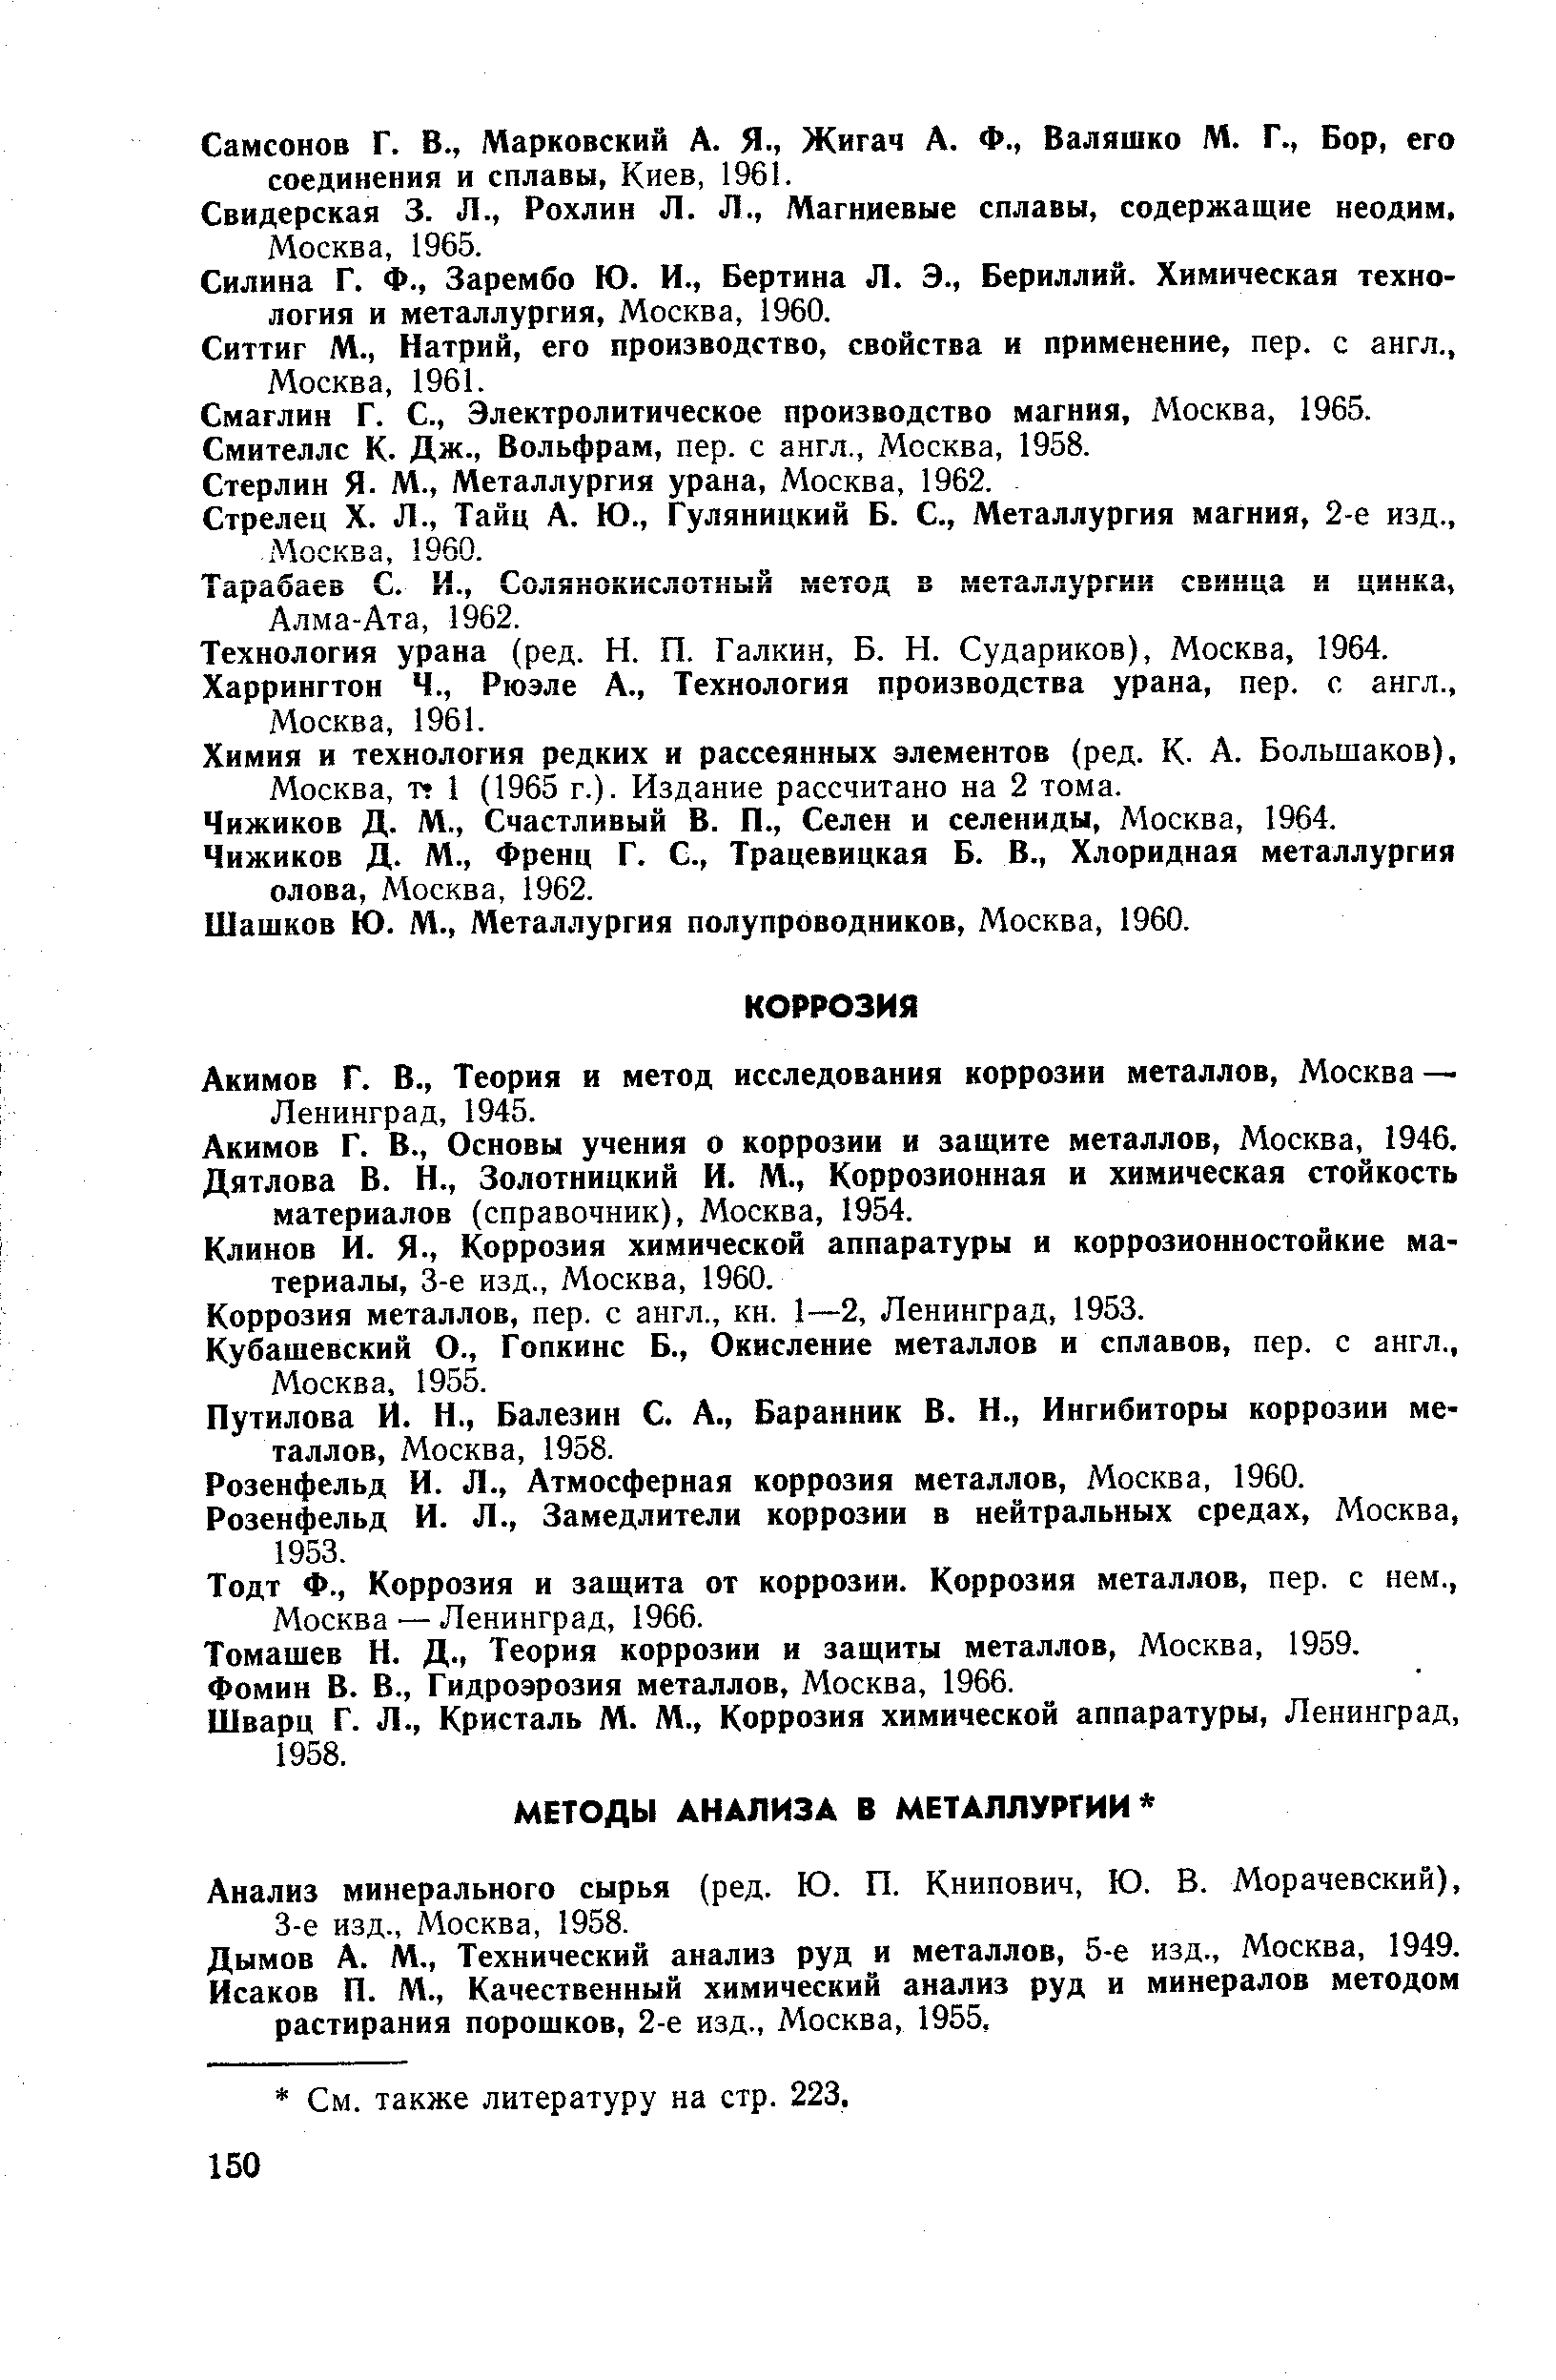 Акимов Г. В., Теория и метод исследования коррозии металлов, Москва — Ленинград, 1945.